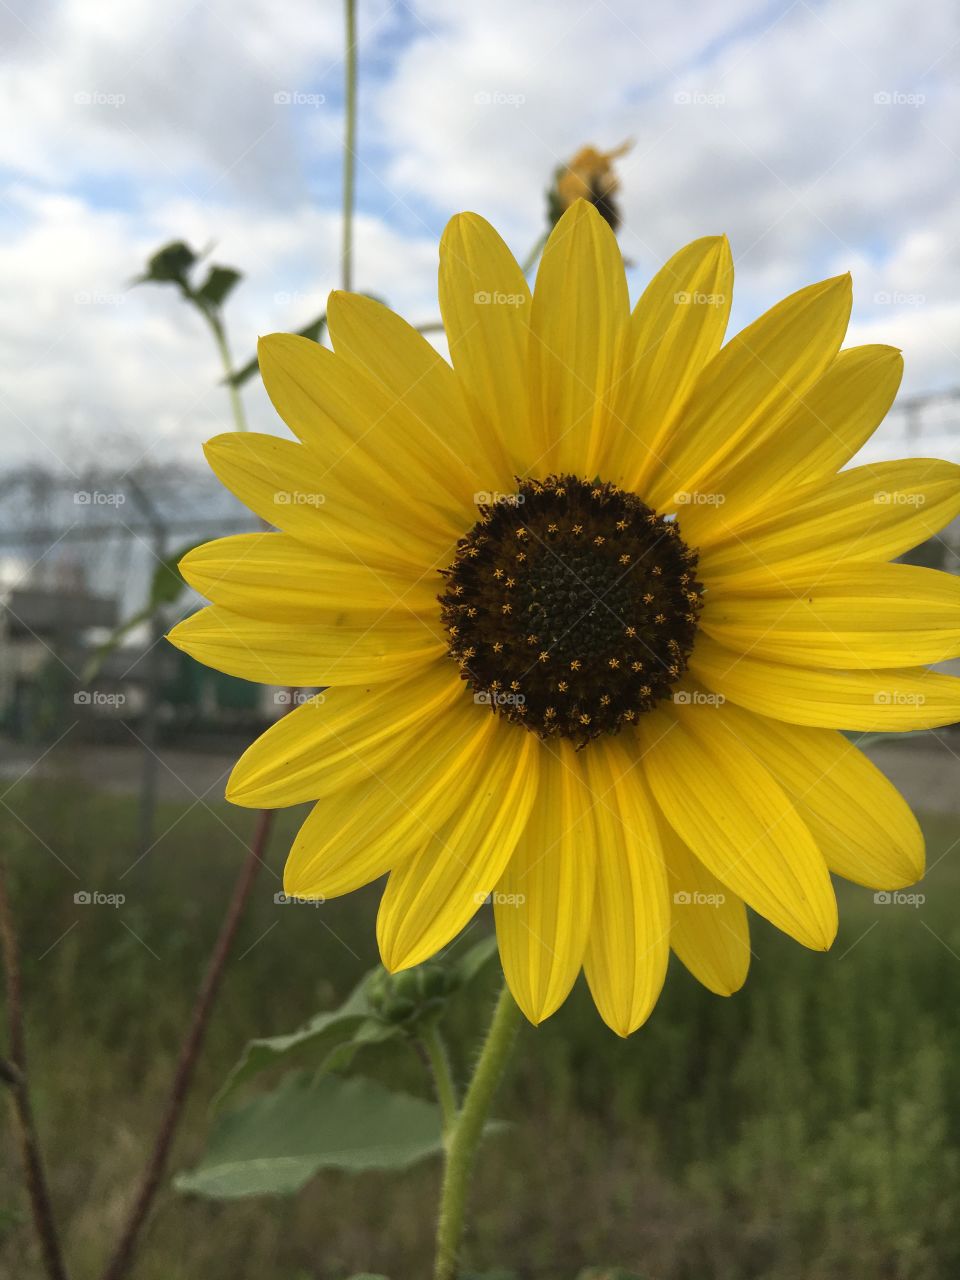 Sunflower in a field in Texas 